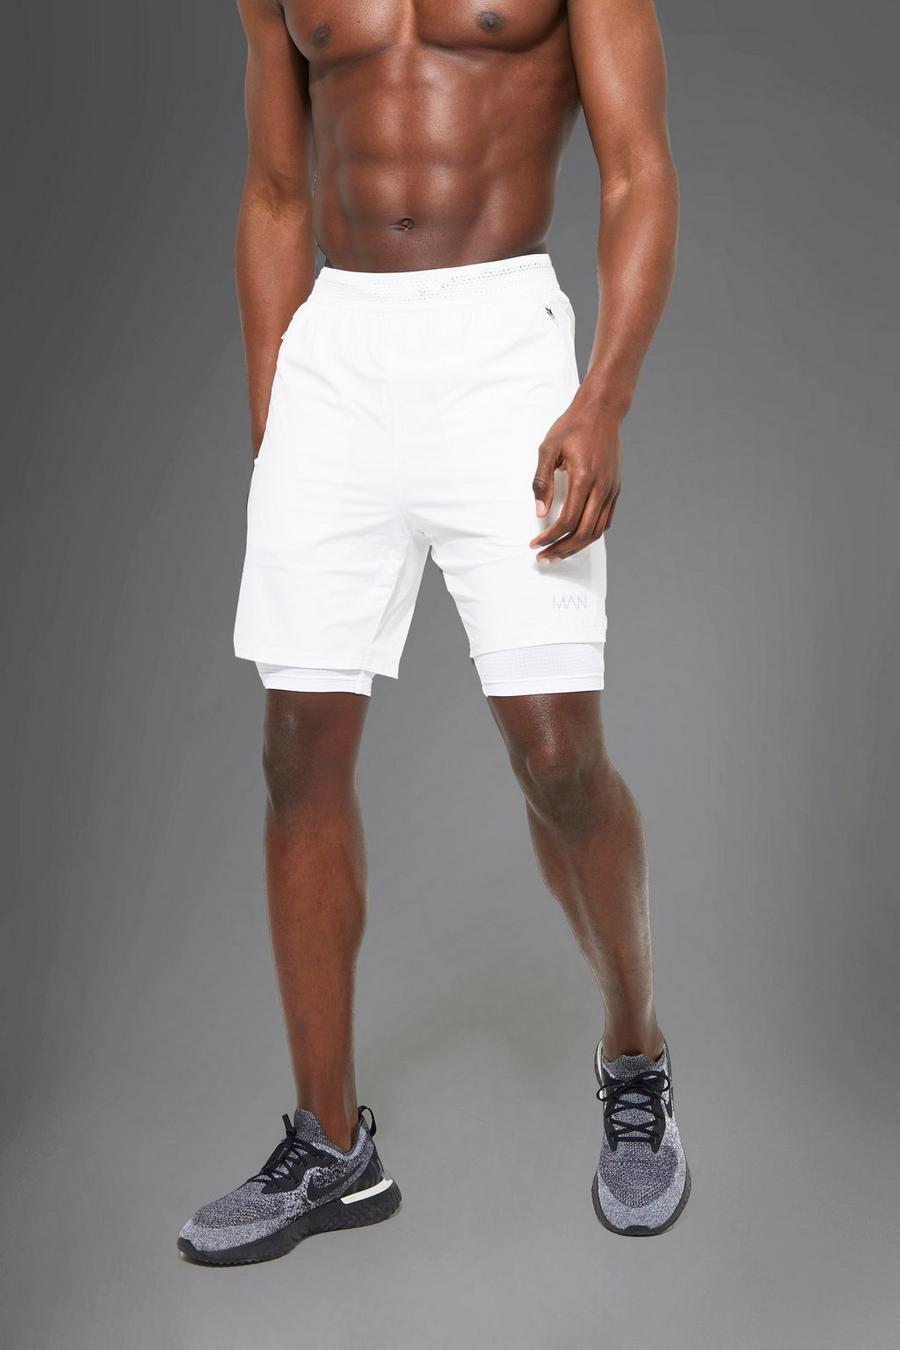 Pantalón corto MAN Active 2 en 1, White blanco